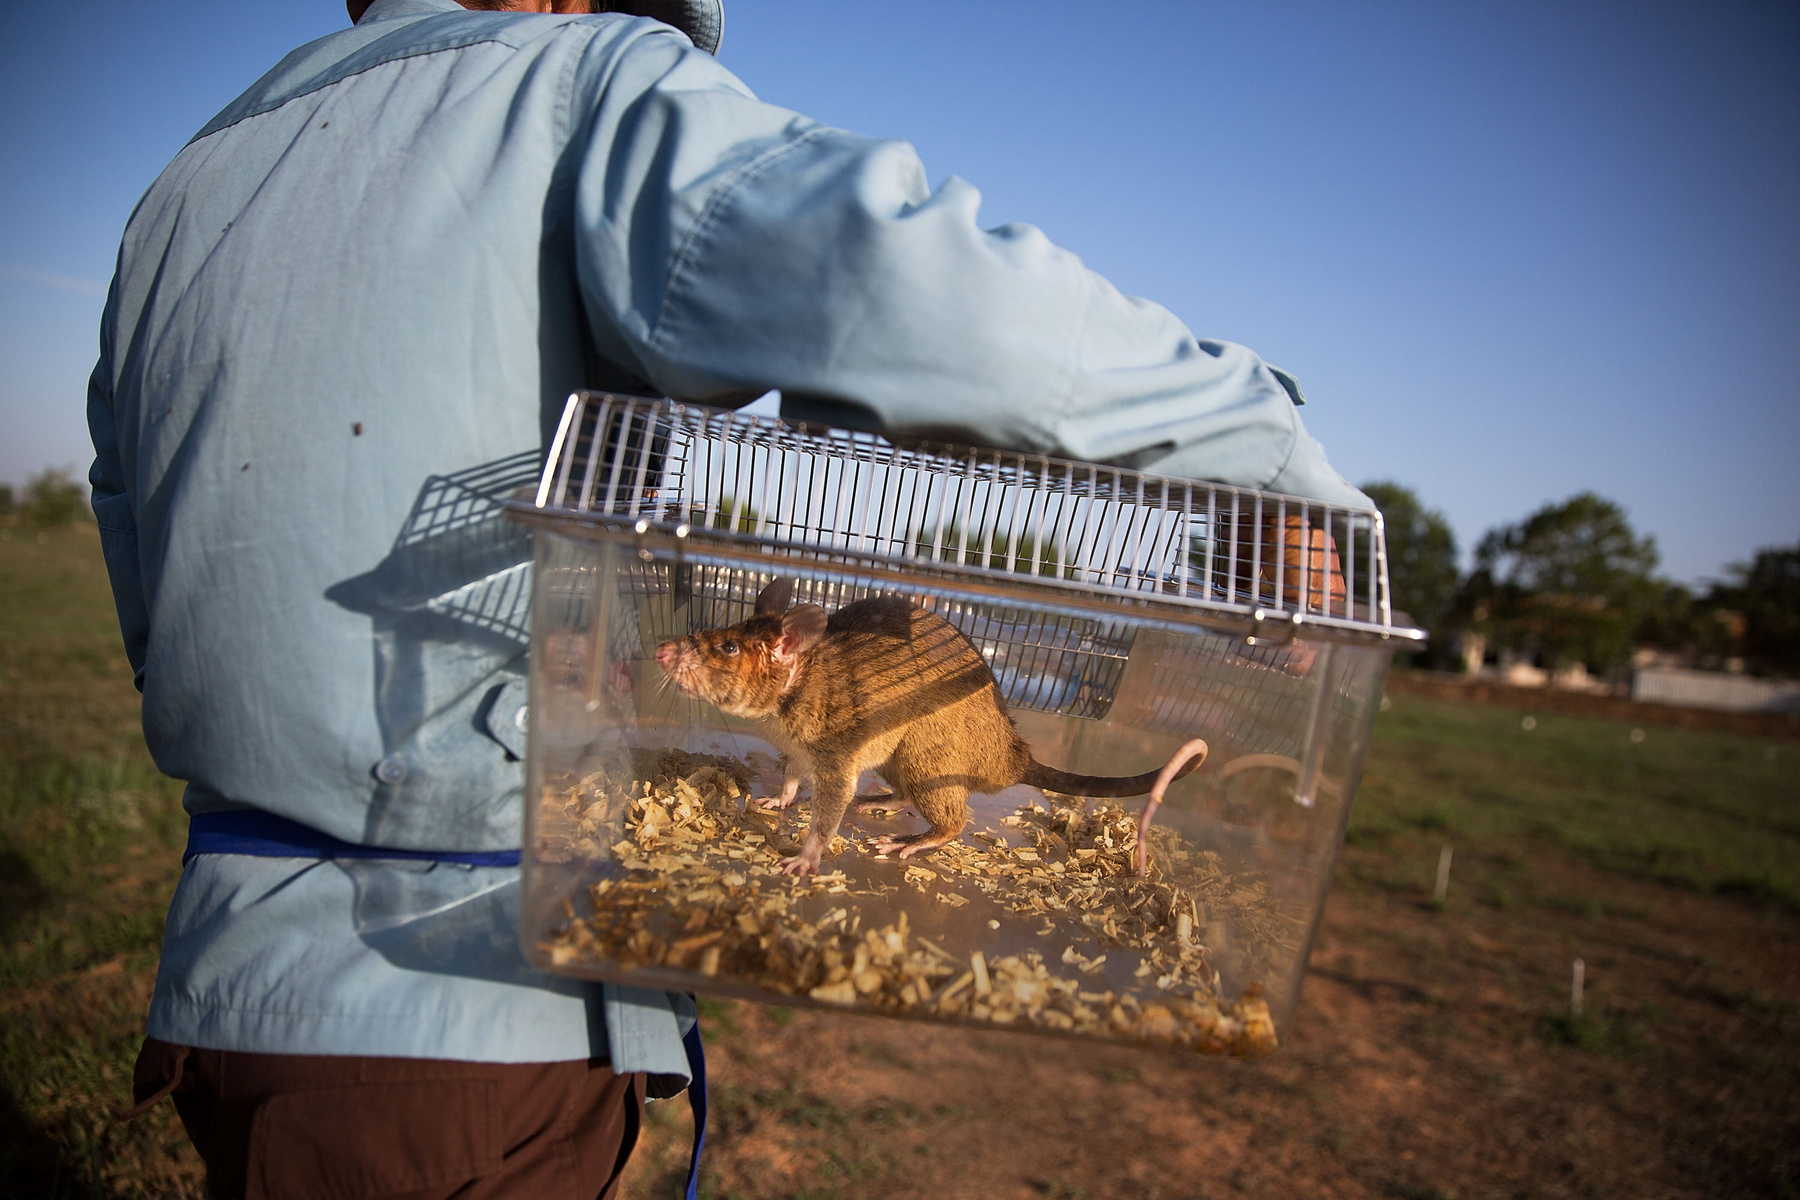 Az óriás erszényes patkányok nem csak az aknákat szagolják ki nagy hatékonysággal, hanem az emberi köpetből a tuberkolózist is. A patkányok annyira ügyesek, hogy a sokszor a kórházi teszteken negatívnak nyilvánított mintákban is helyesen észlelik a TBC-t, rengeteg ember életét mentve meg ezzel Afrikában. Az Apopo szerint a patkányaik eddig hétezer olyan betegnél fedezték fel a tbc-t, akiket a kórházi tesztek egészségesnek mutattak, és ezzel körülbelül 45 százalékkal növelték a tbc diagnosztizálás hatékonyságát.